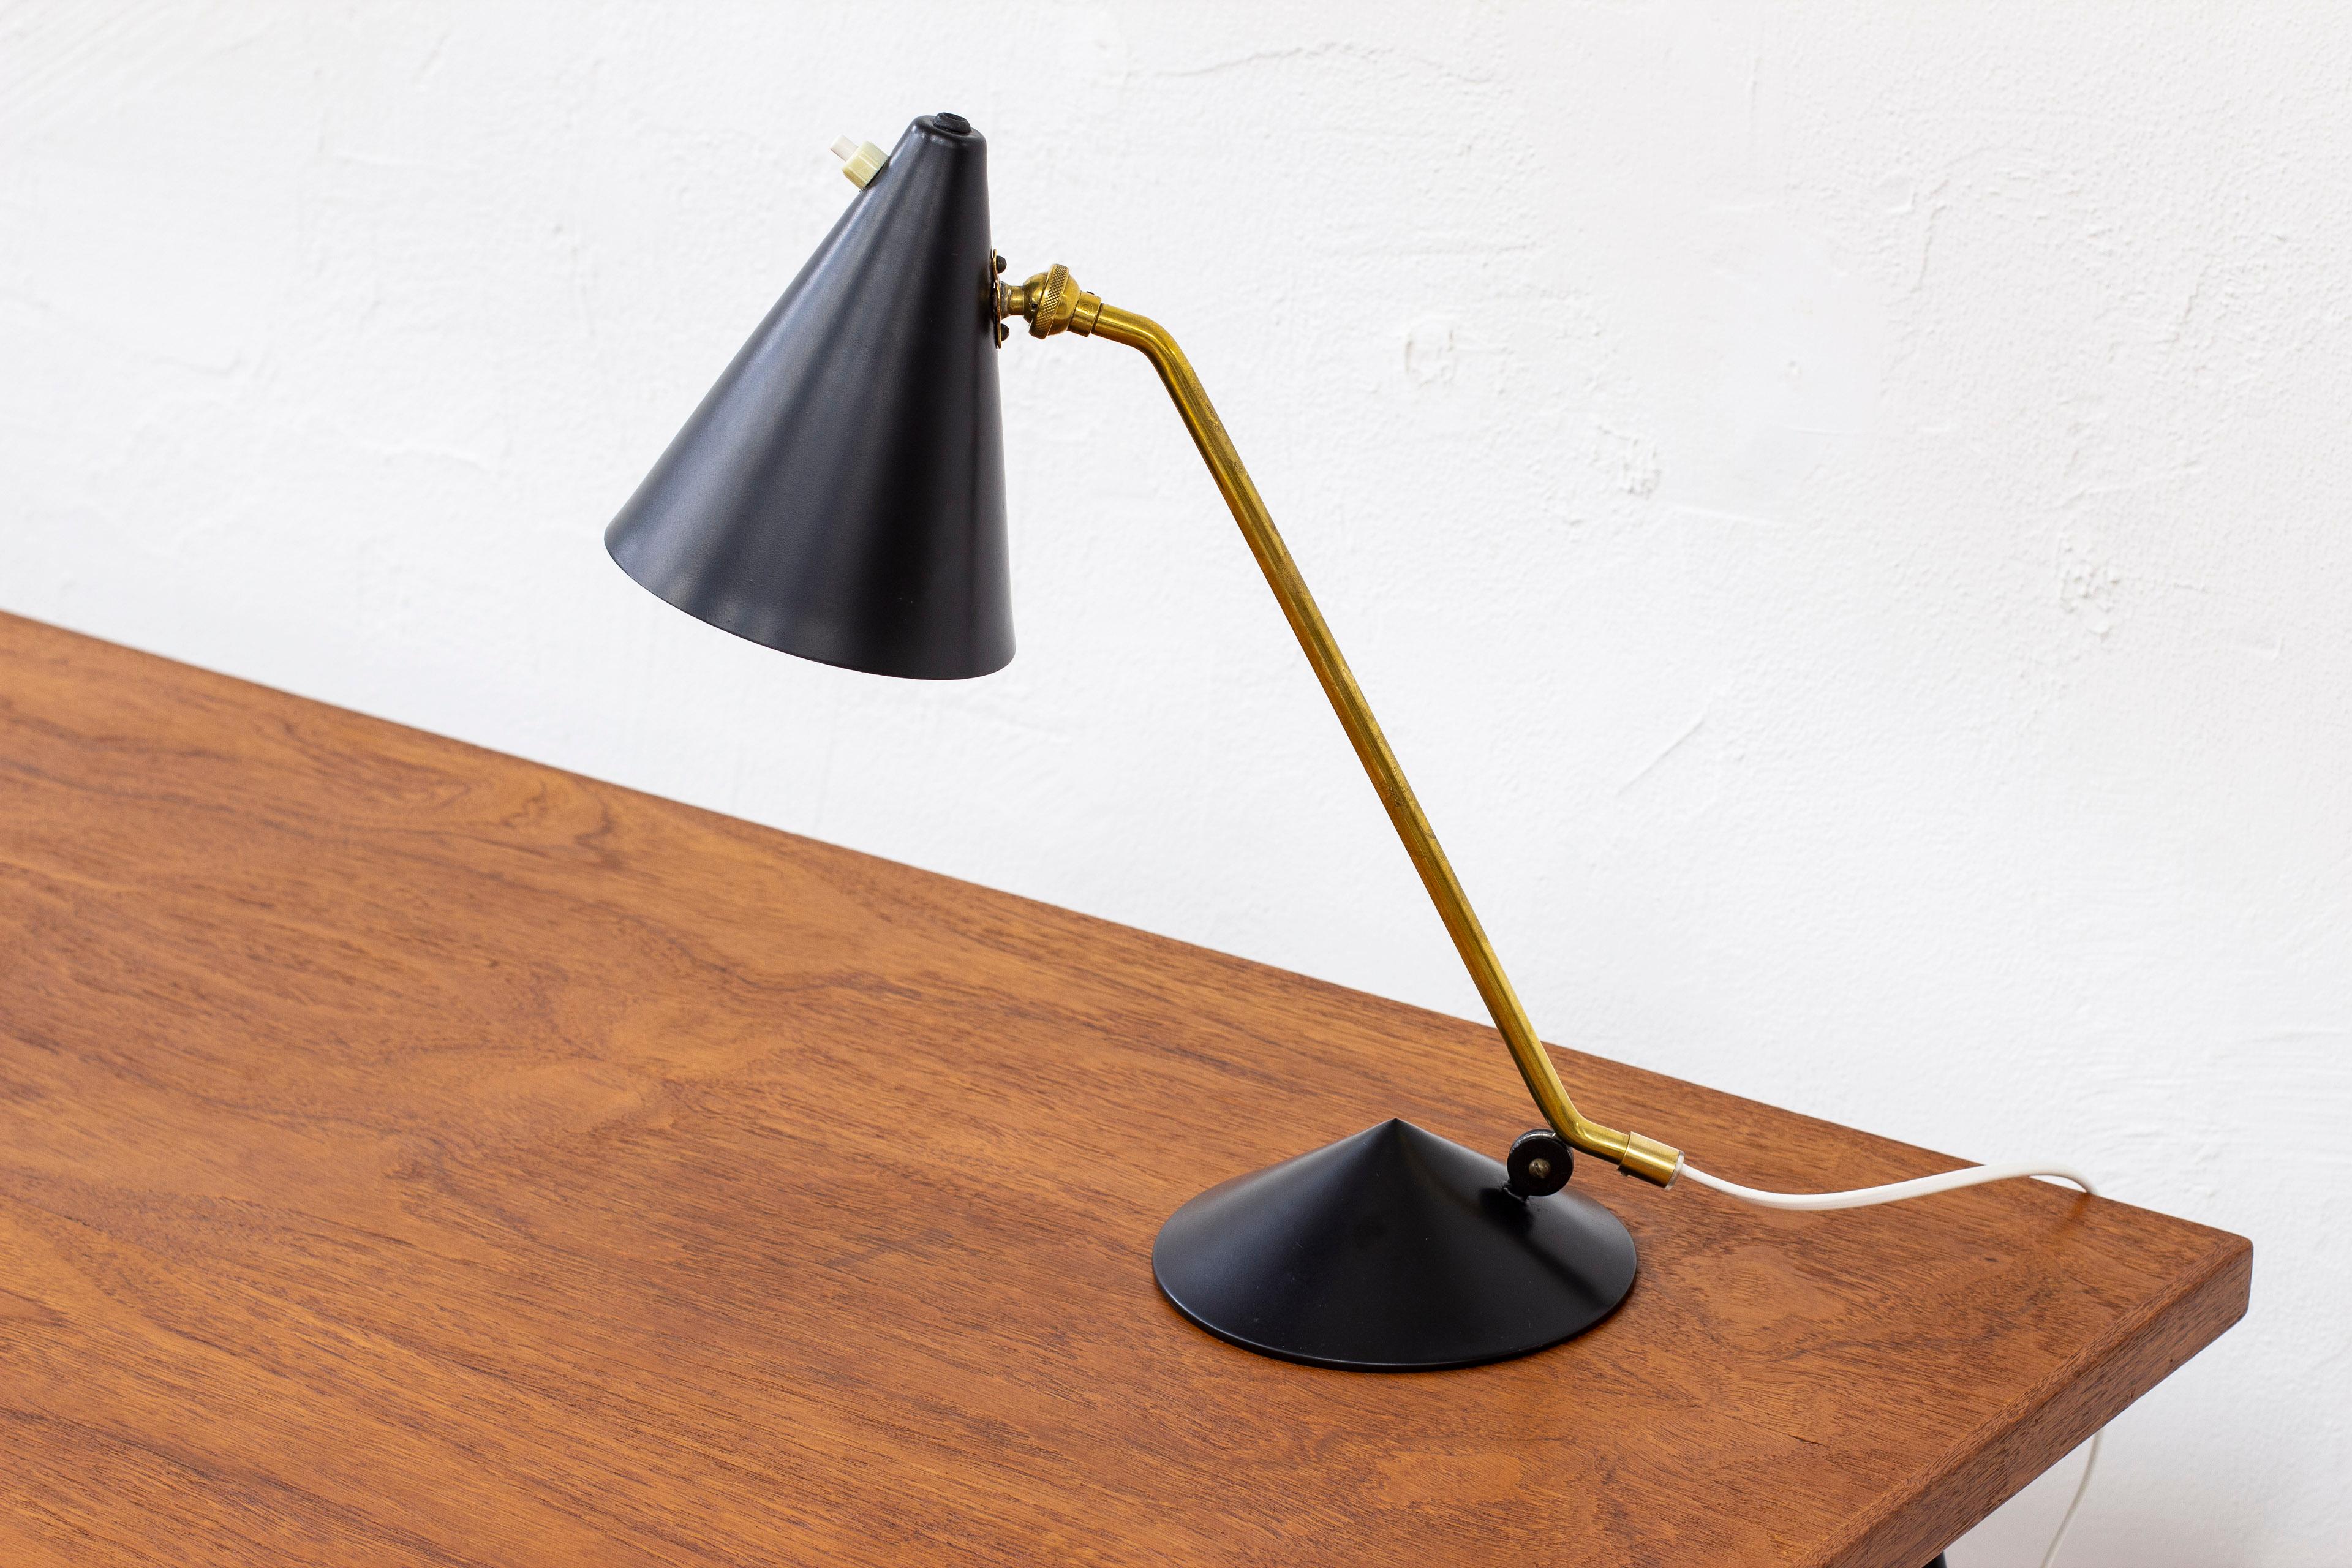 Lampe de table attribuée à Svend Aage Holm Sørensen. Produit au Danemark dans les années 1950, probablement par Holm Sørensen & Co. Fabriqué en laiton et en métal peint en noir. Deux abat-jour réglables. Interrupteur de l'abat-jour en état de